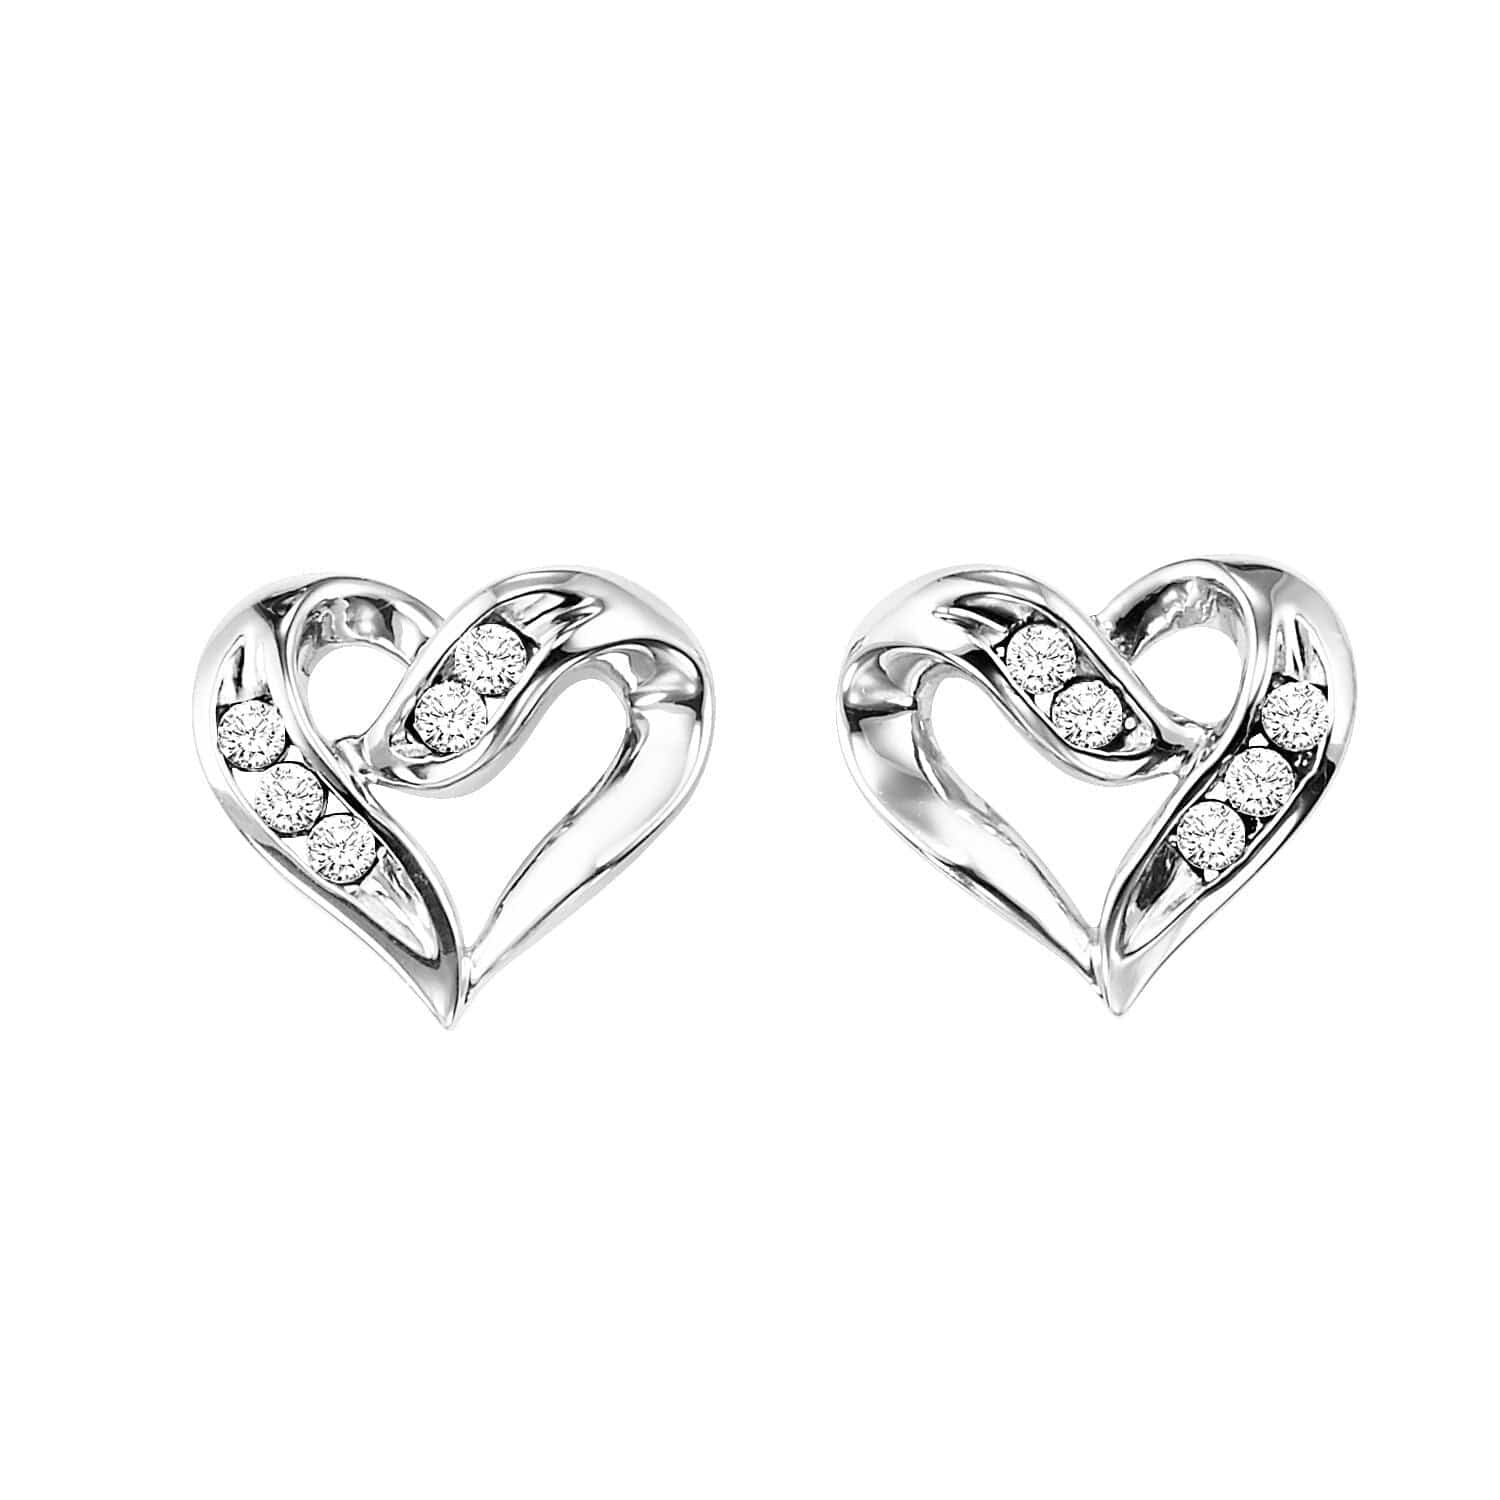 BW James Jewelers Earrings Sterling Silver Heart Shape Earrings